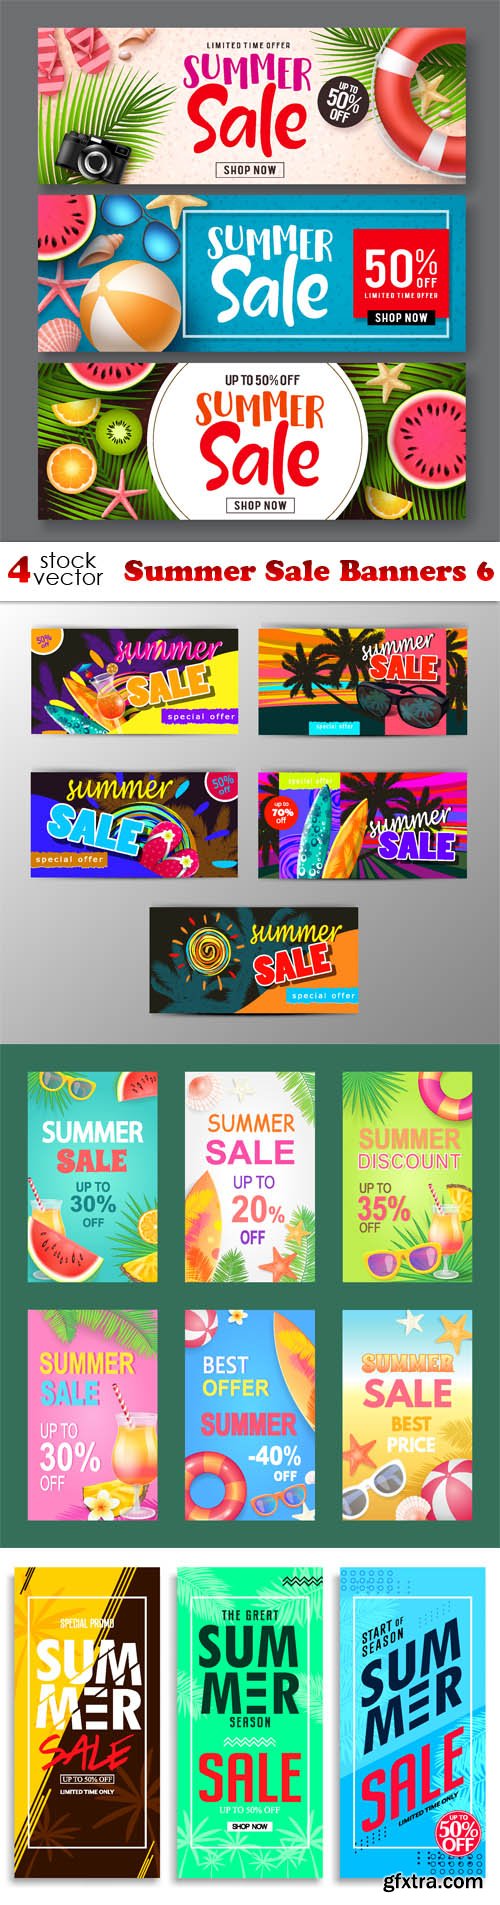 Vectors - Summer Sale Banners 6